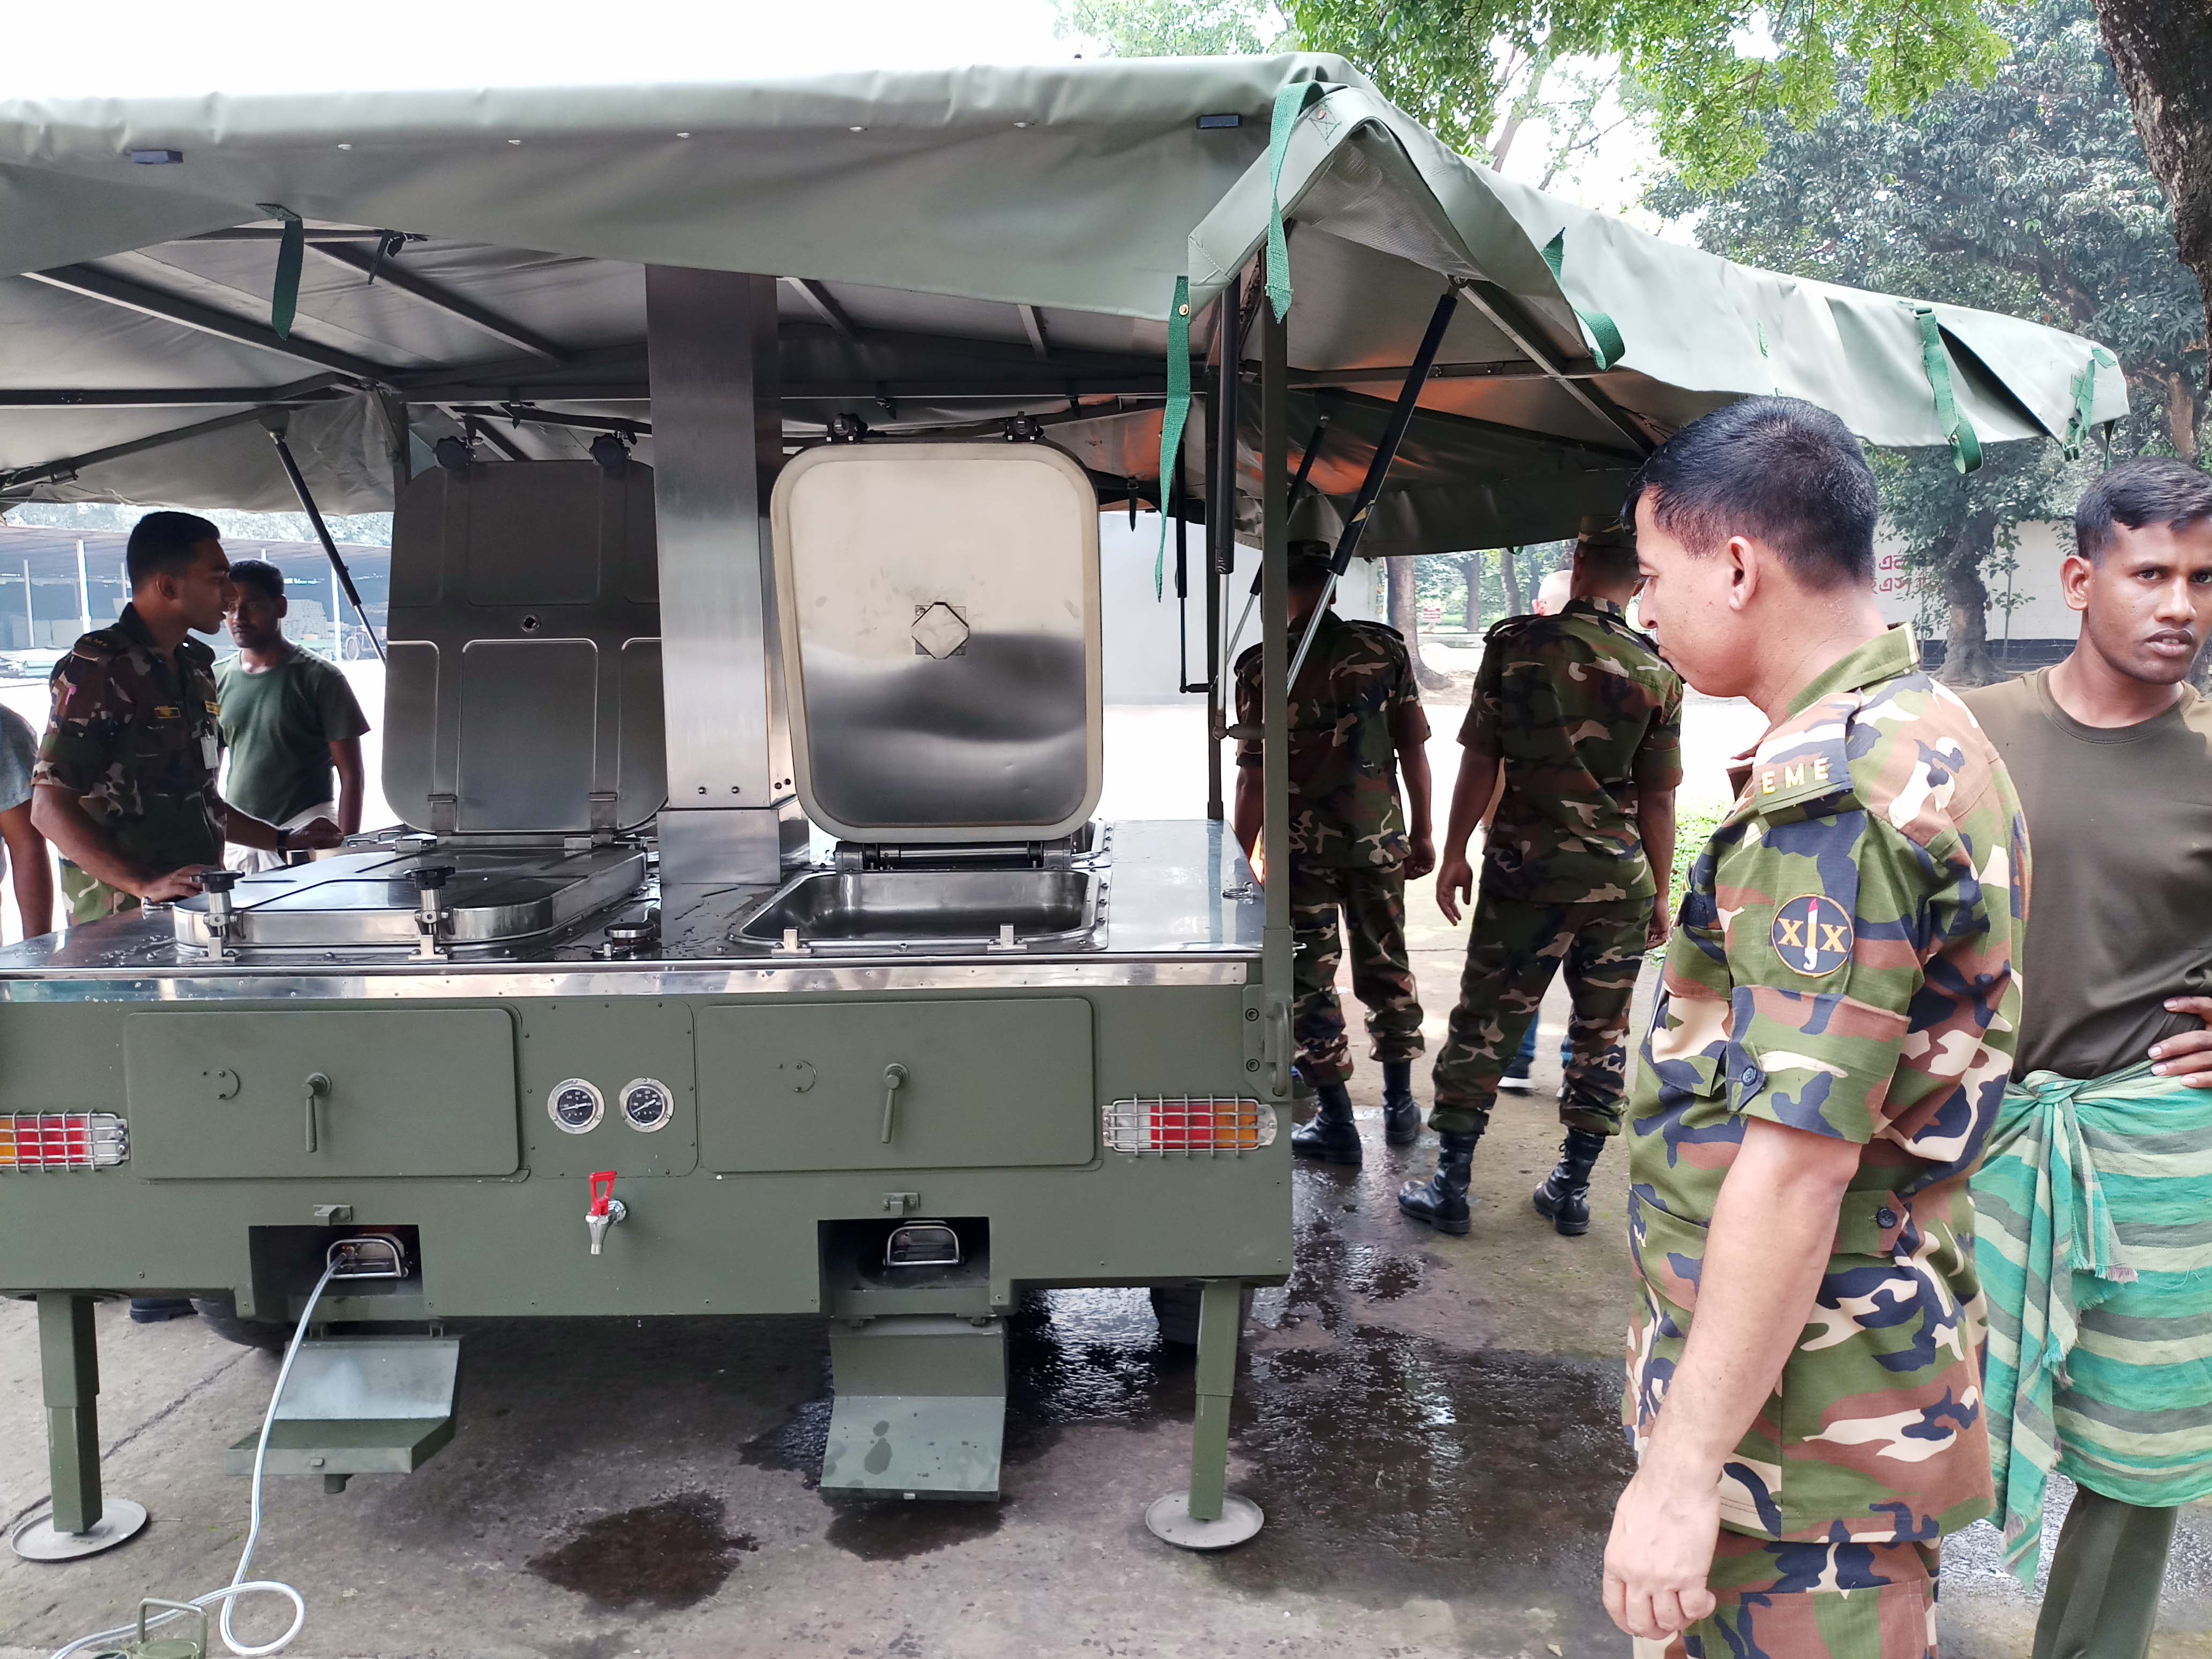 MFK Military Field Mobile Kitchen Trailer Karch Field Kitchen equipment